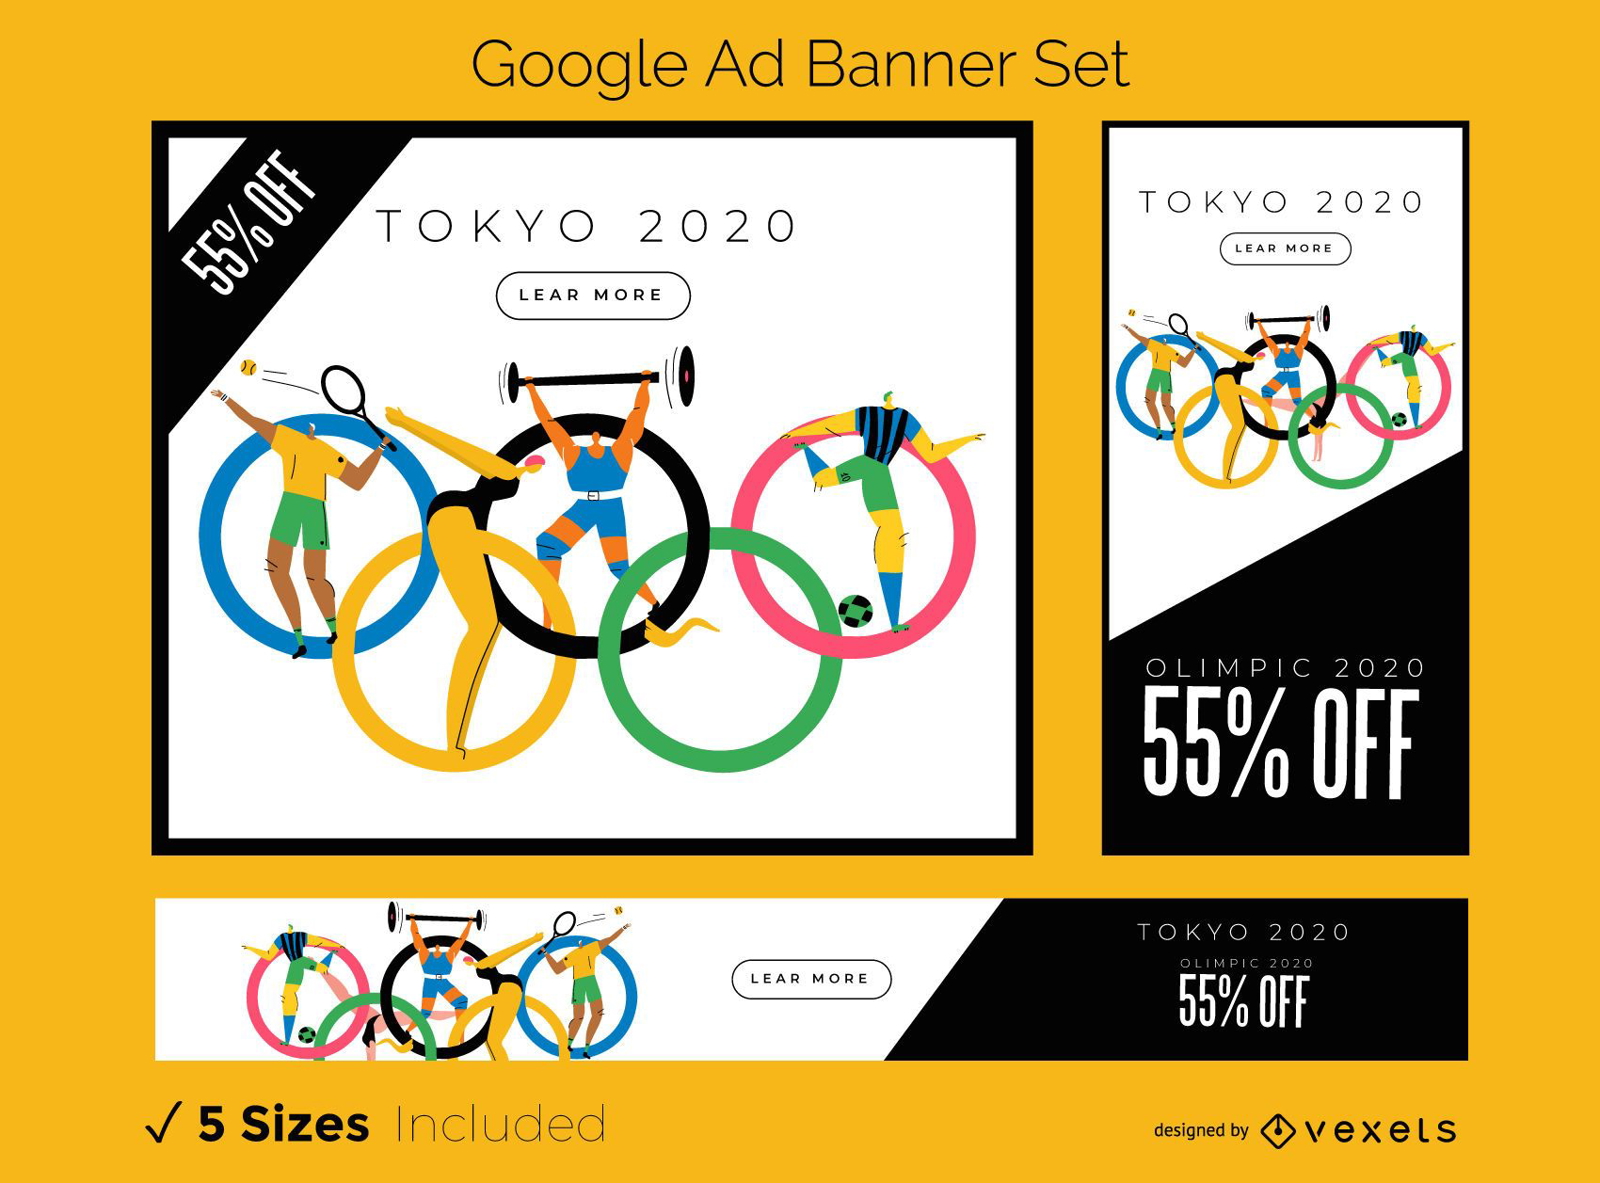 Conjunto de banners publicitarios de Google de Tokio 2020